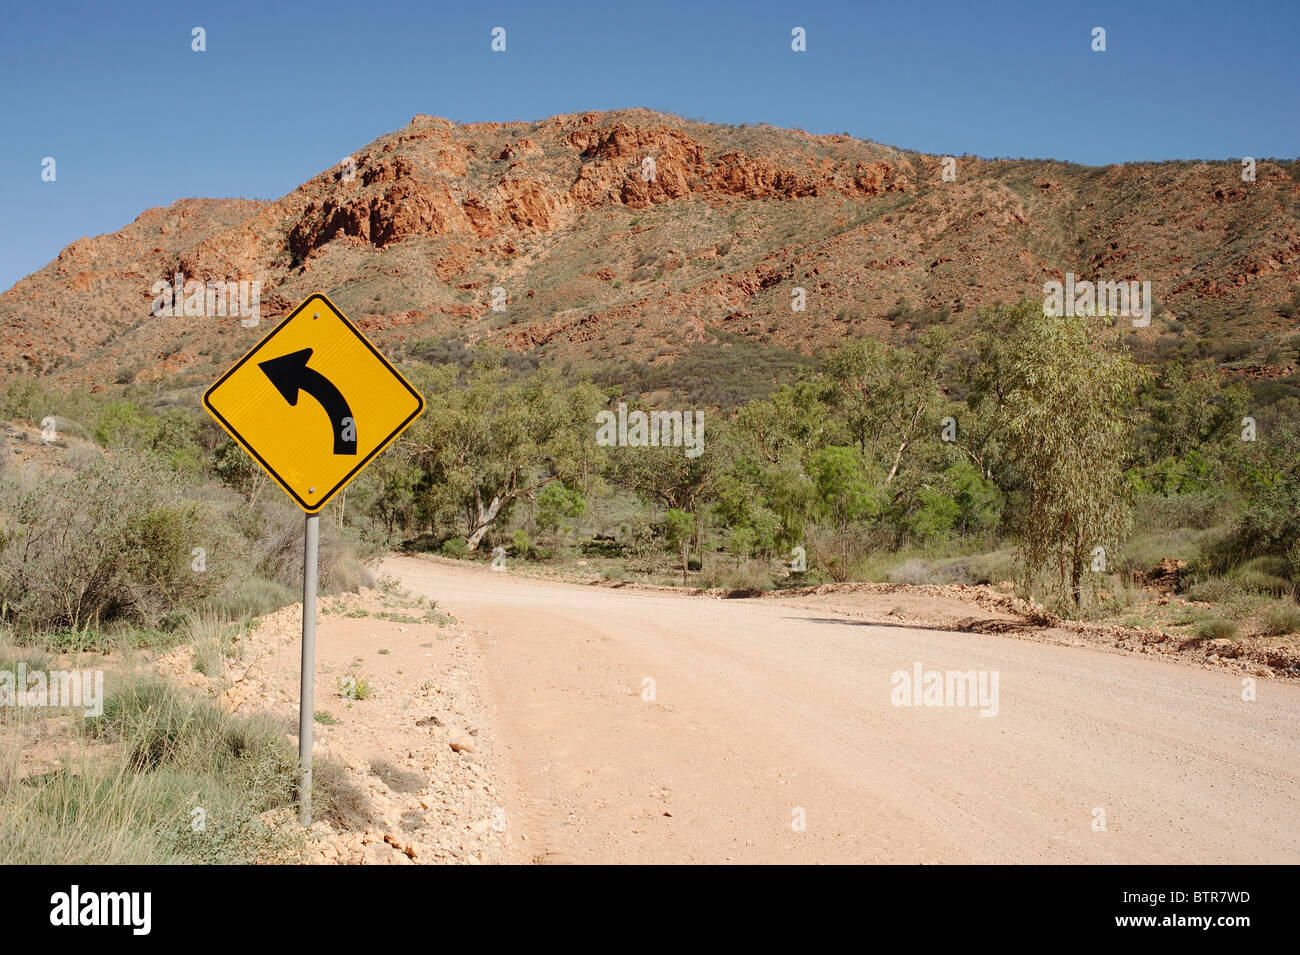 Australien, N'Dhala Schlucht, Straße mit Kurve Schild Stockfoto